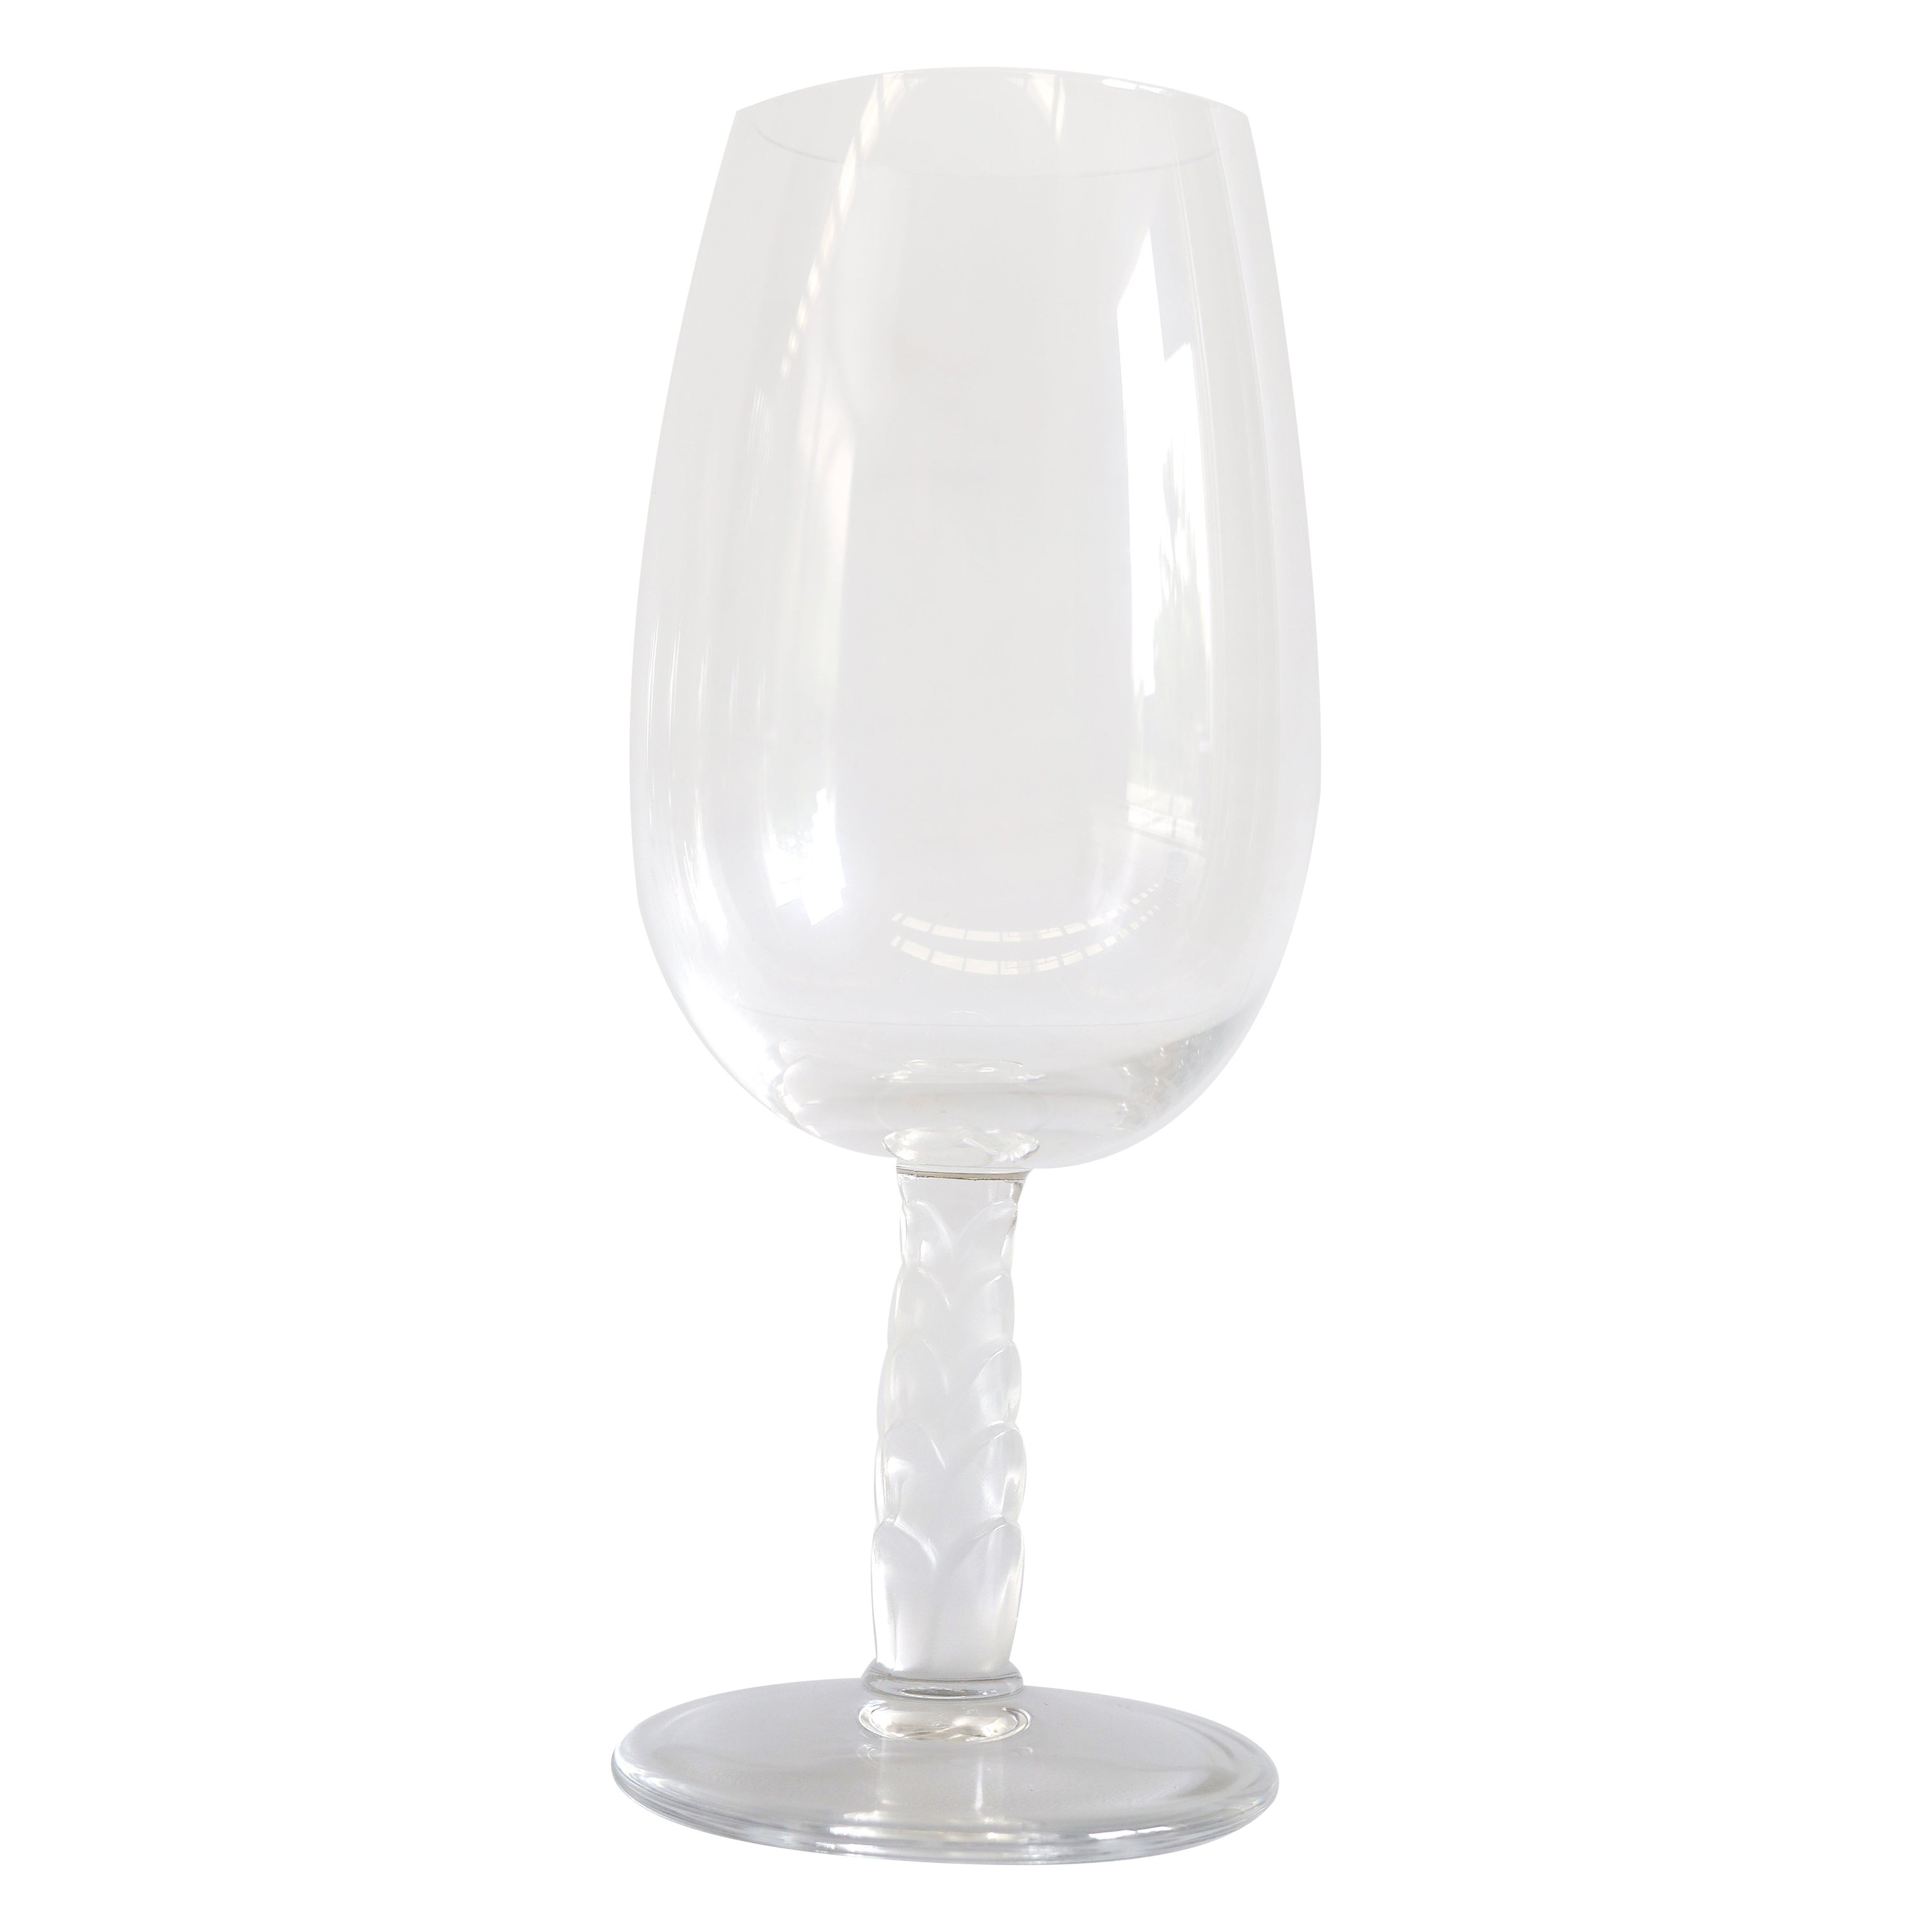 Lalique "Kentia" Set of 6 Glasses For Sale